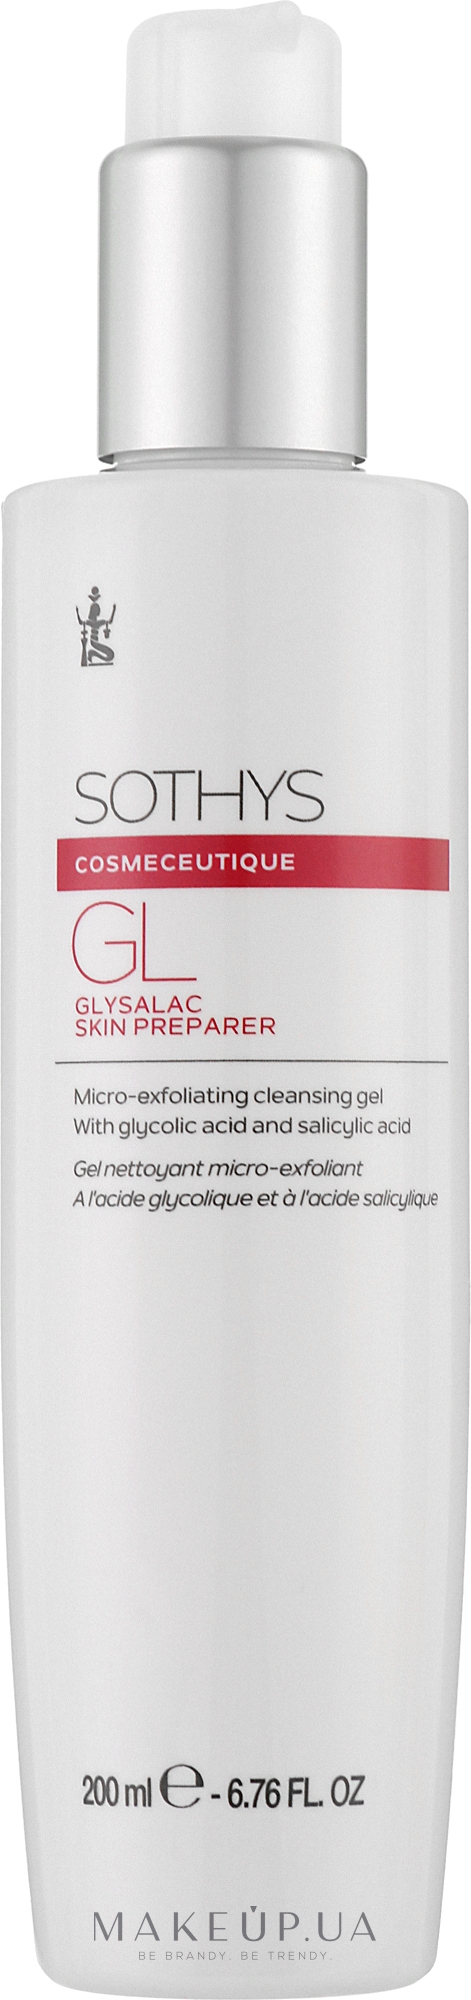 Мультиактивний очищувальний гель для обличчя - Sothys Glisalac Skin Preparer — фото 200ml